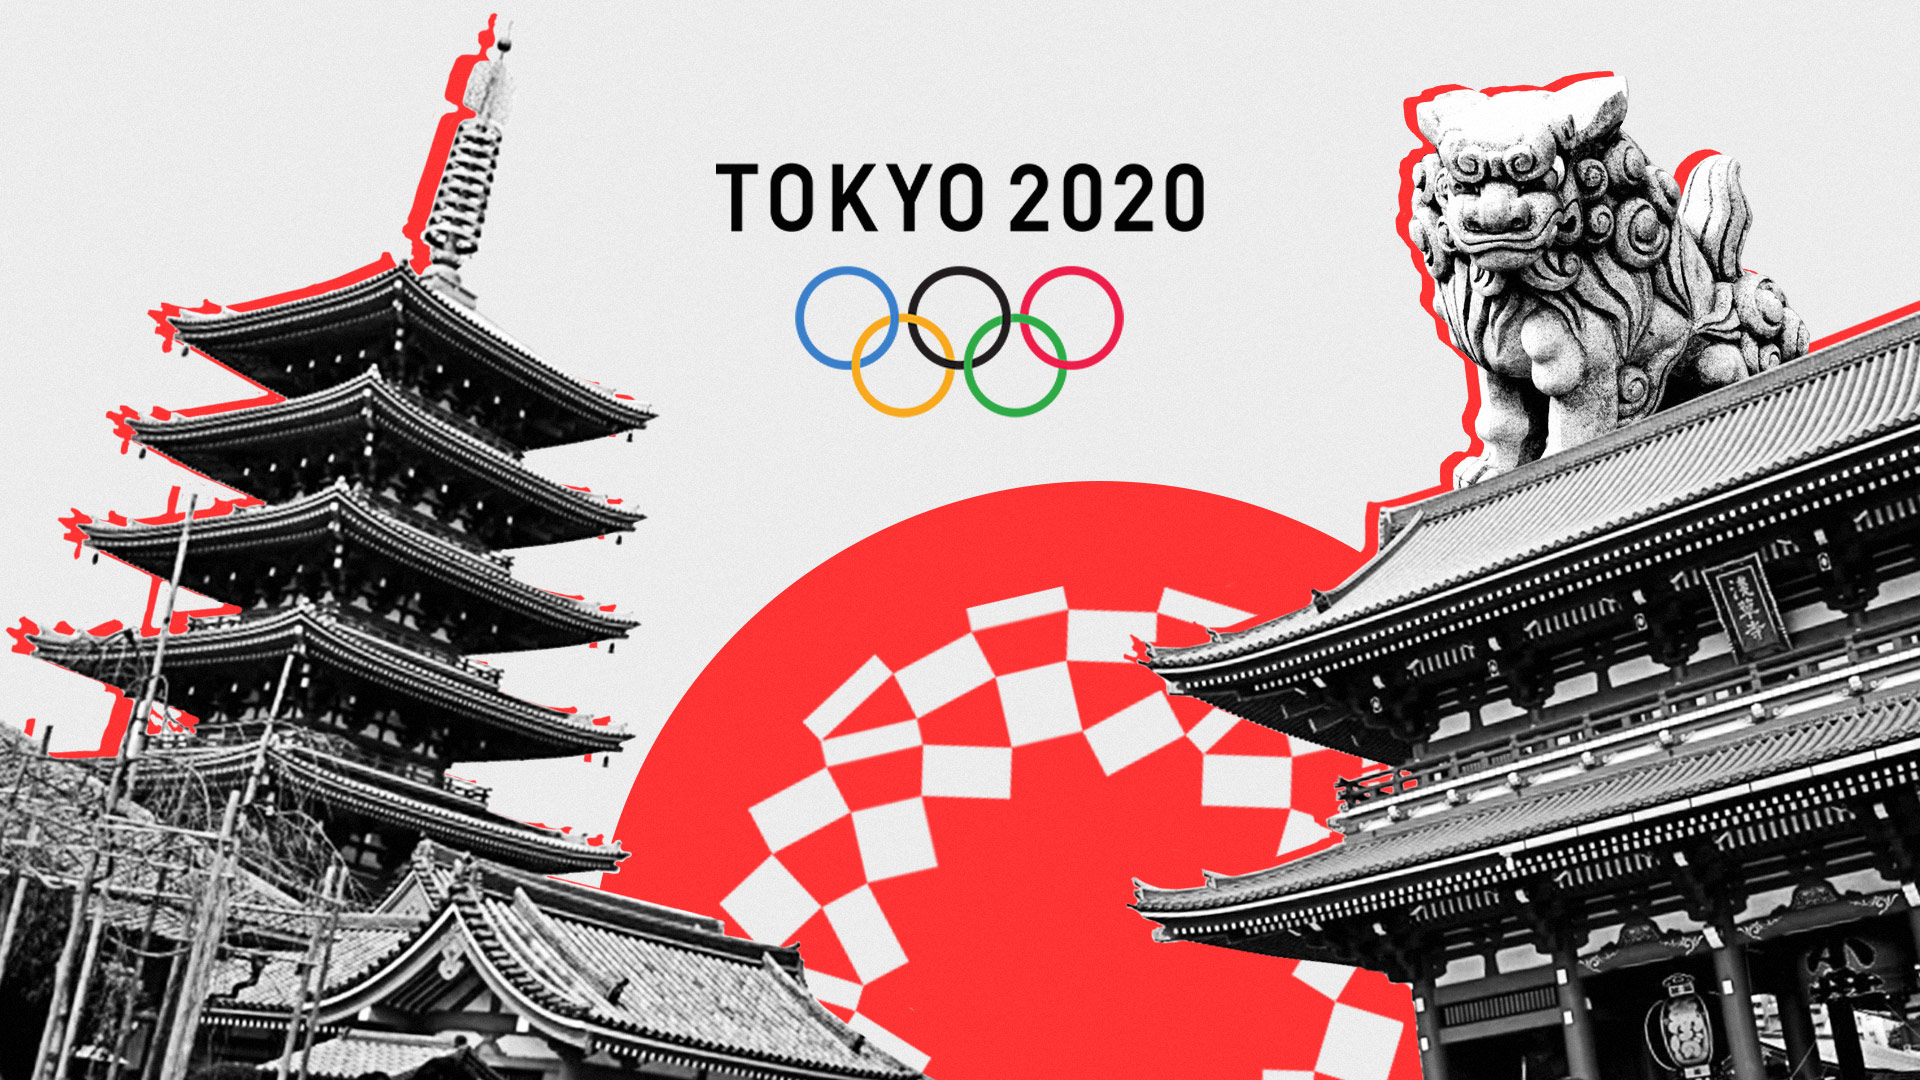 tokyo 2020 olimpiadi